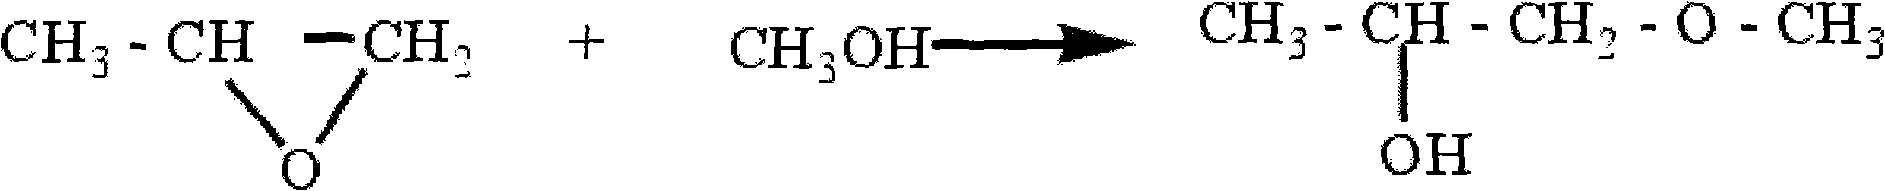 Method for synthesizing propylene glycol methyl ether